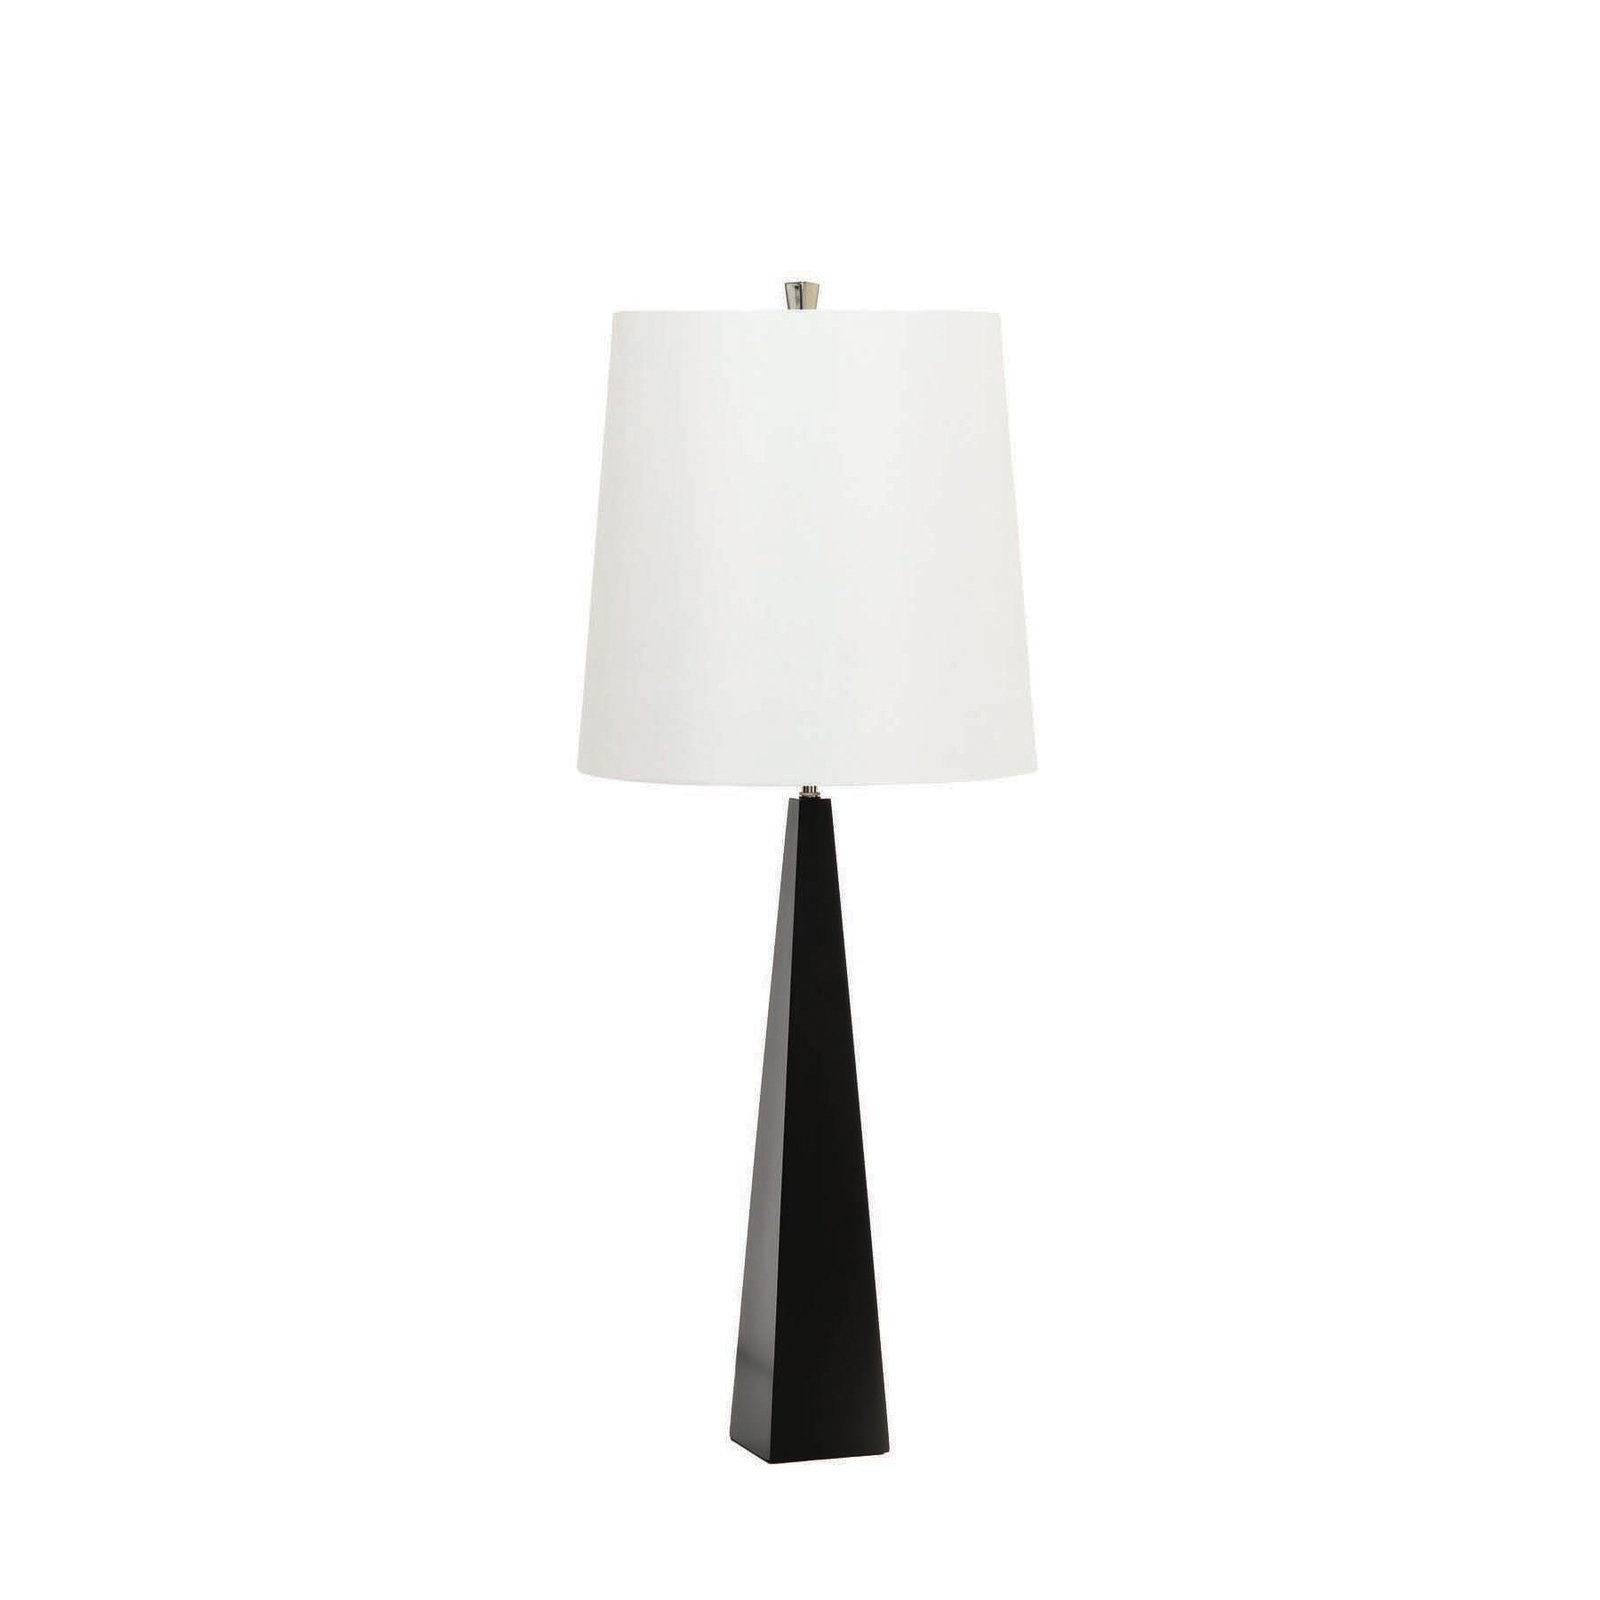 Ascent bordlampe, svart, hvit skjerm